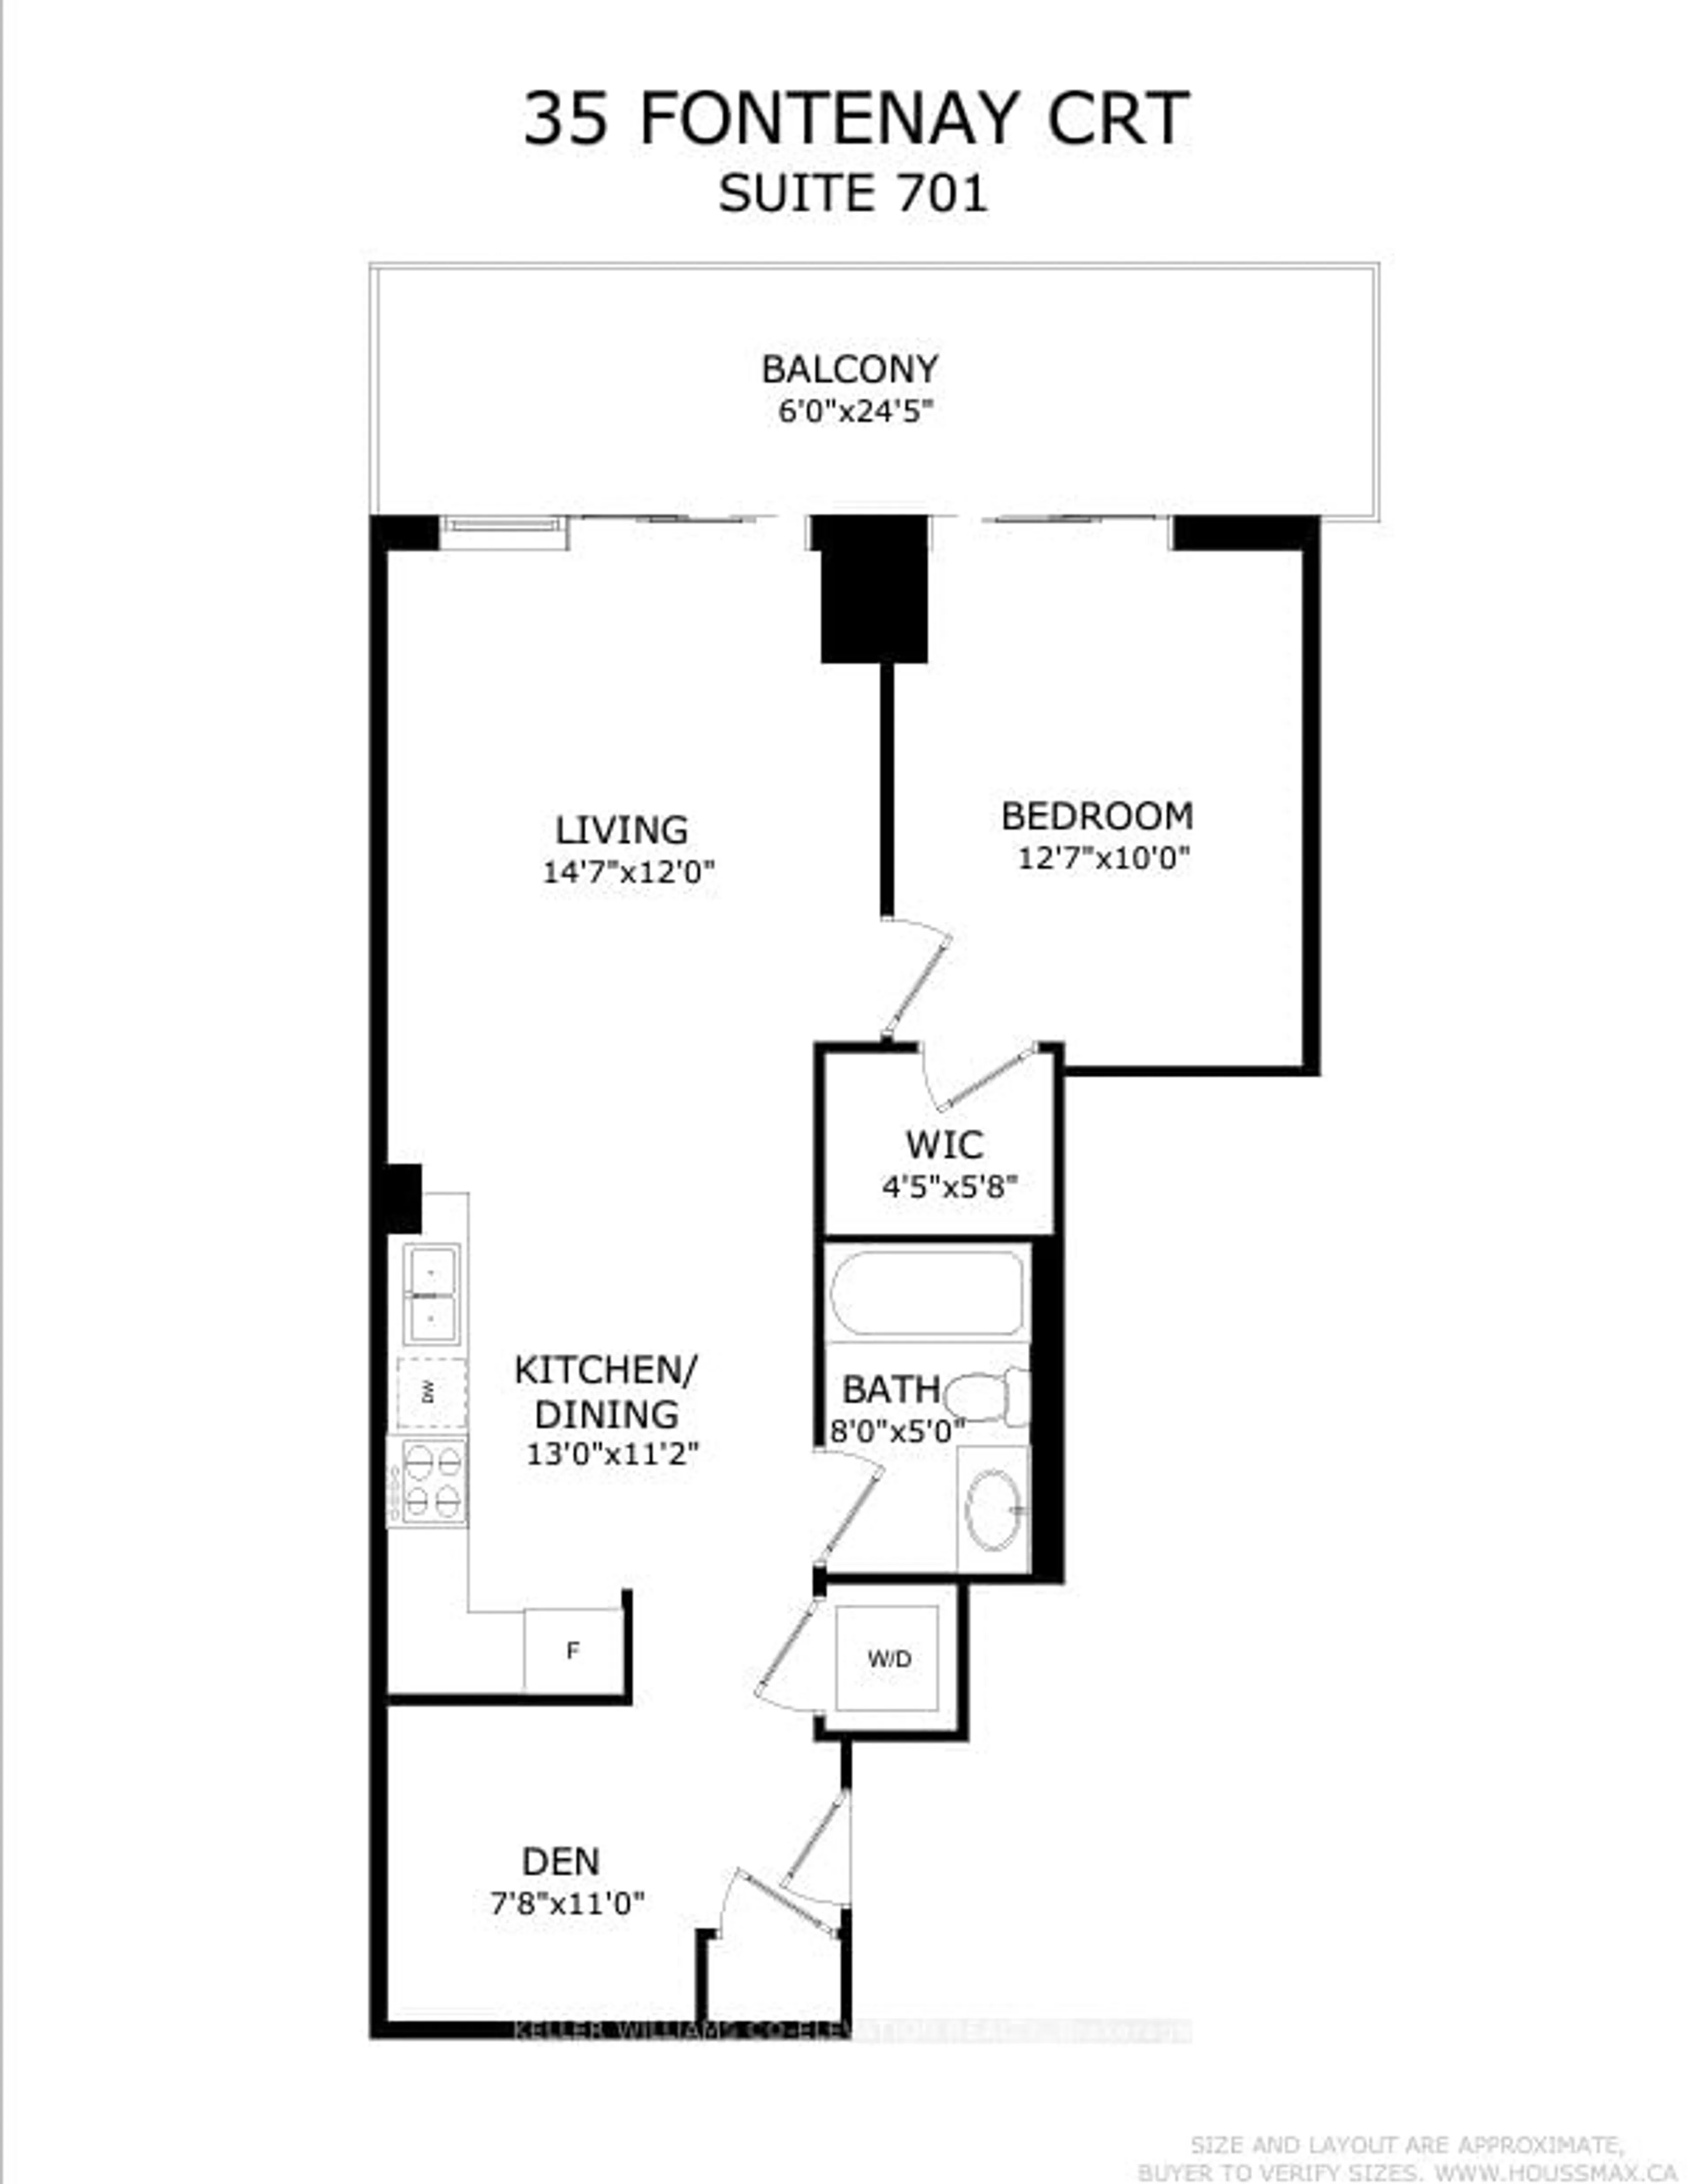 Floor plan for 35 Fontenay Crt #701, Toronto Ontario M9A 0E2